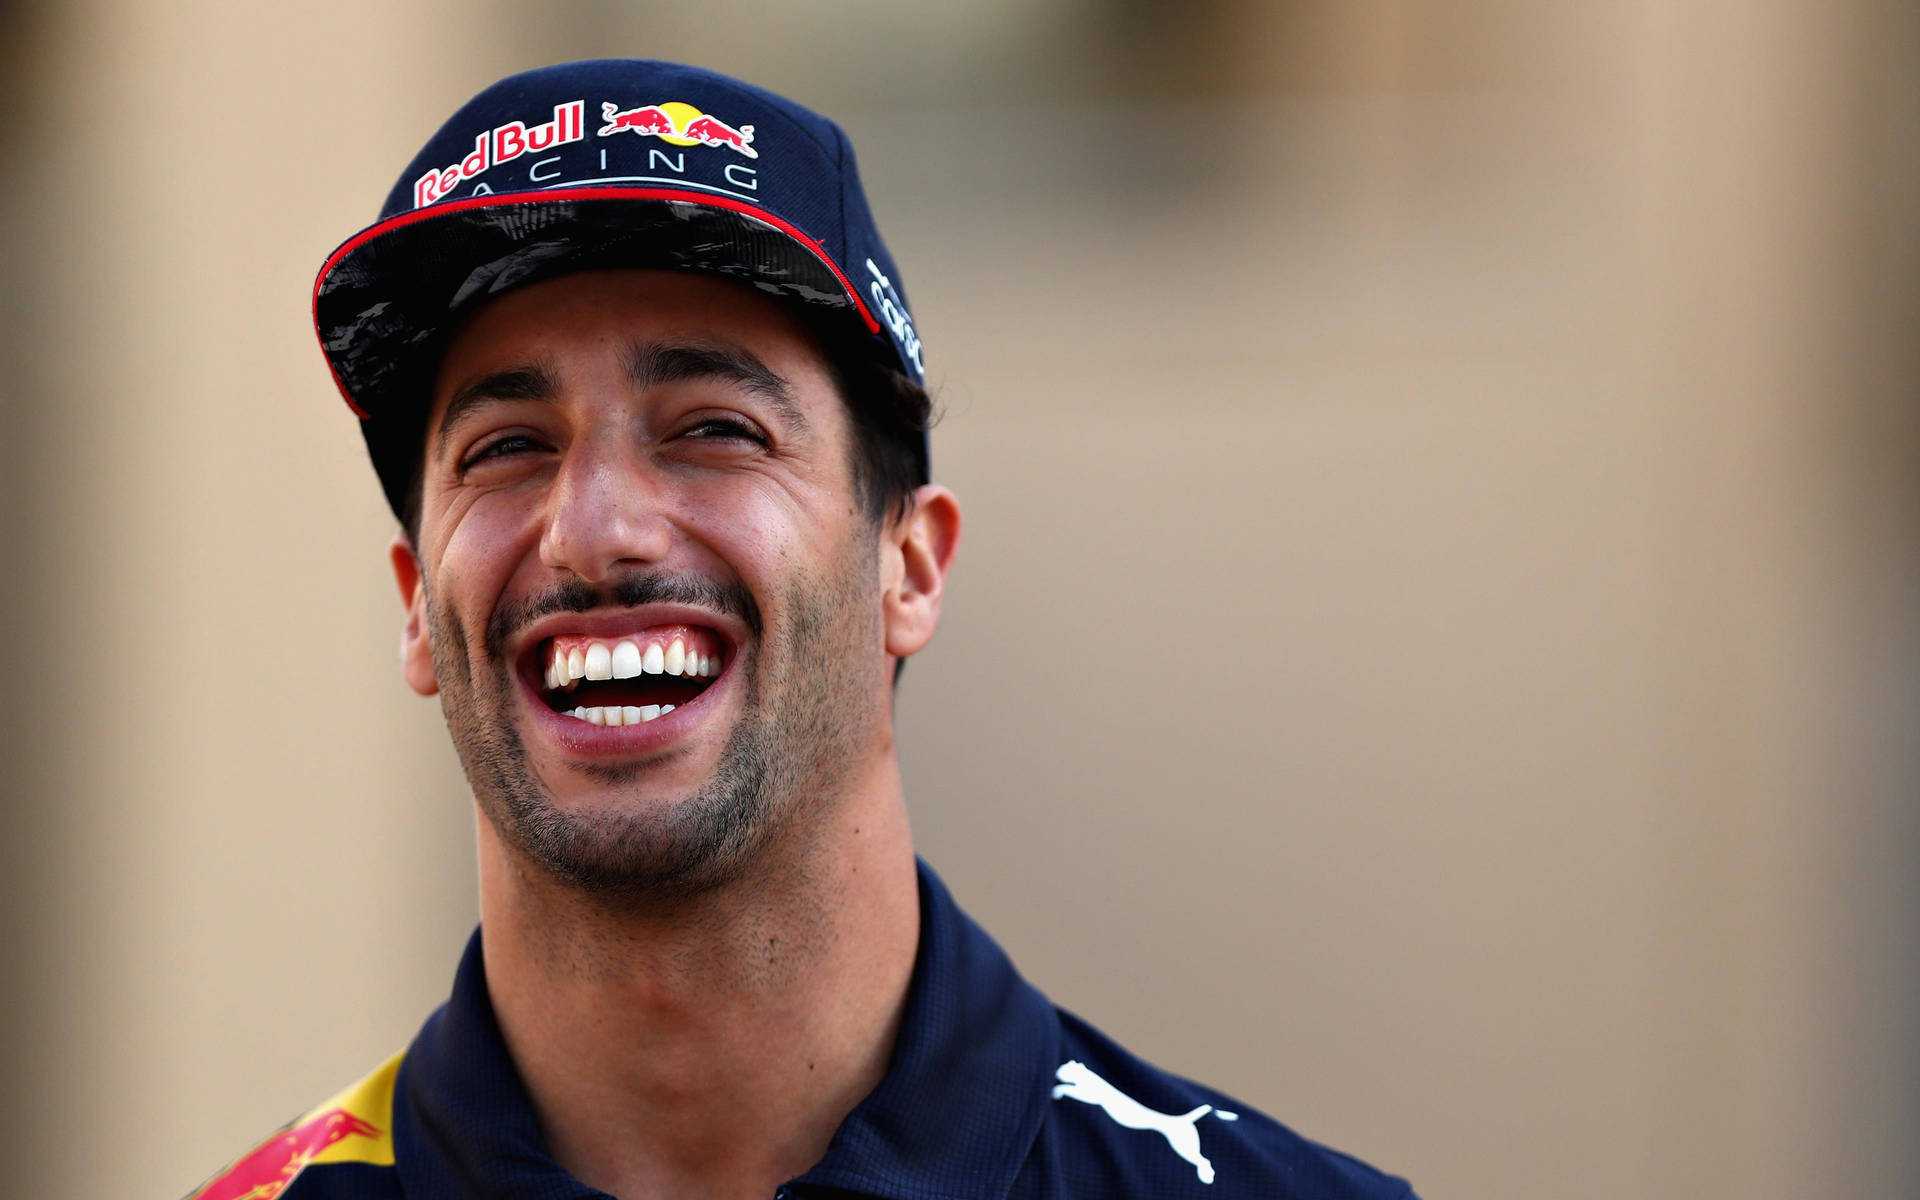 Download Laughing Daniel Ricciardo Wallpaper | Wallpapers.com